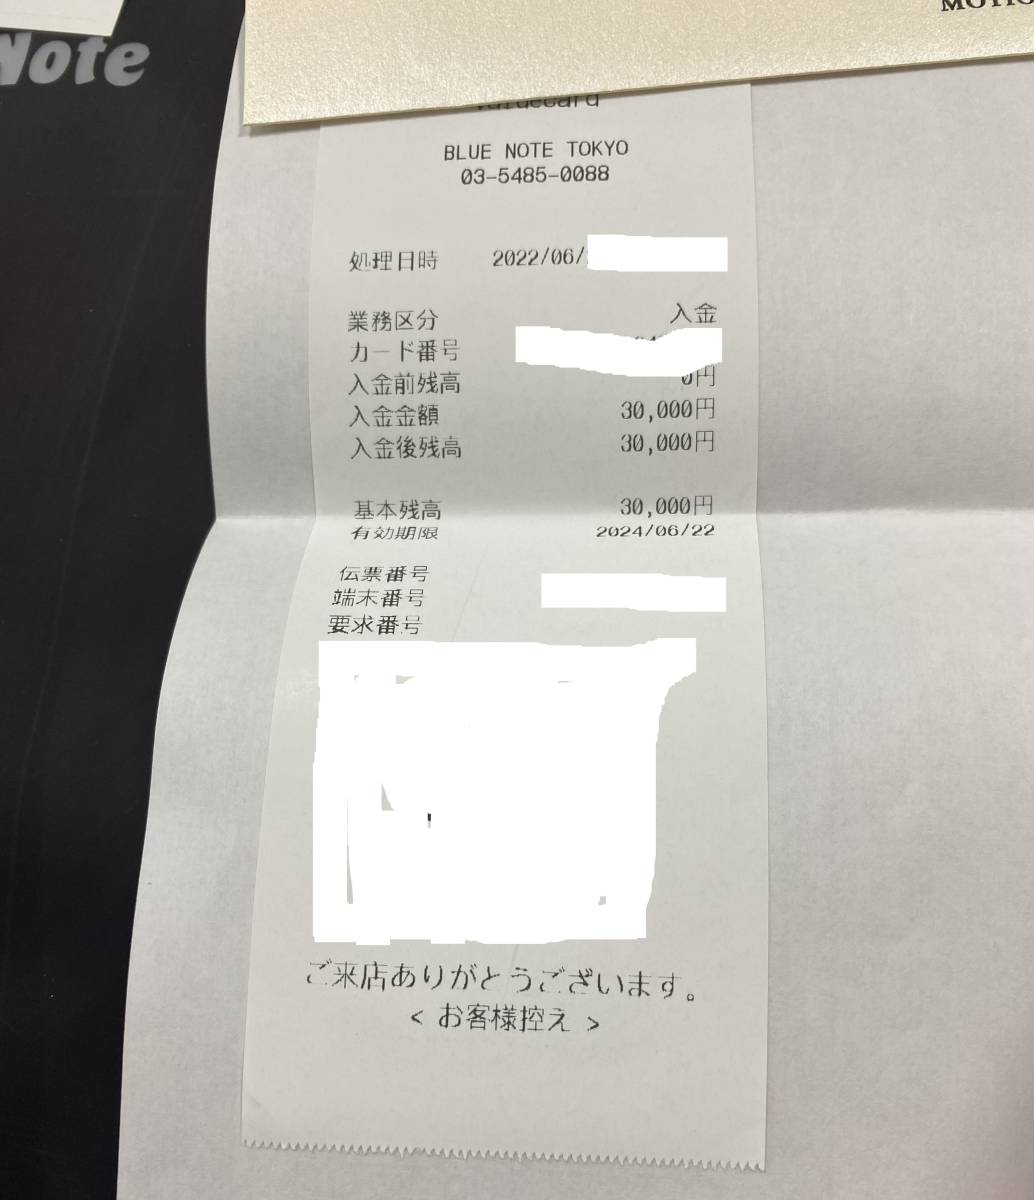 30000円分 ブルーノート東京 ギフトカード コットンクラブ 3万円 